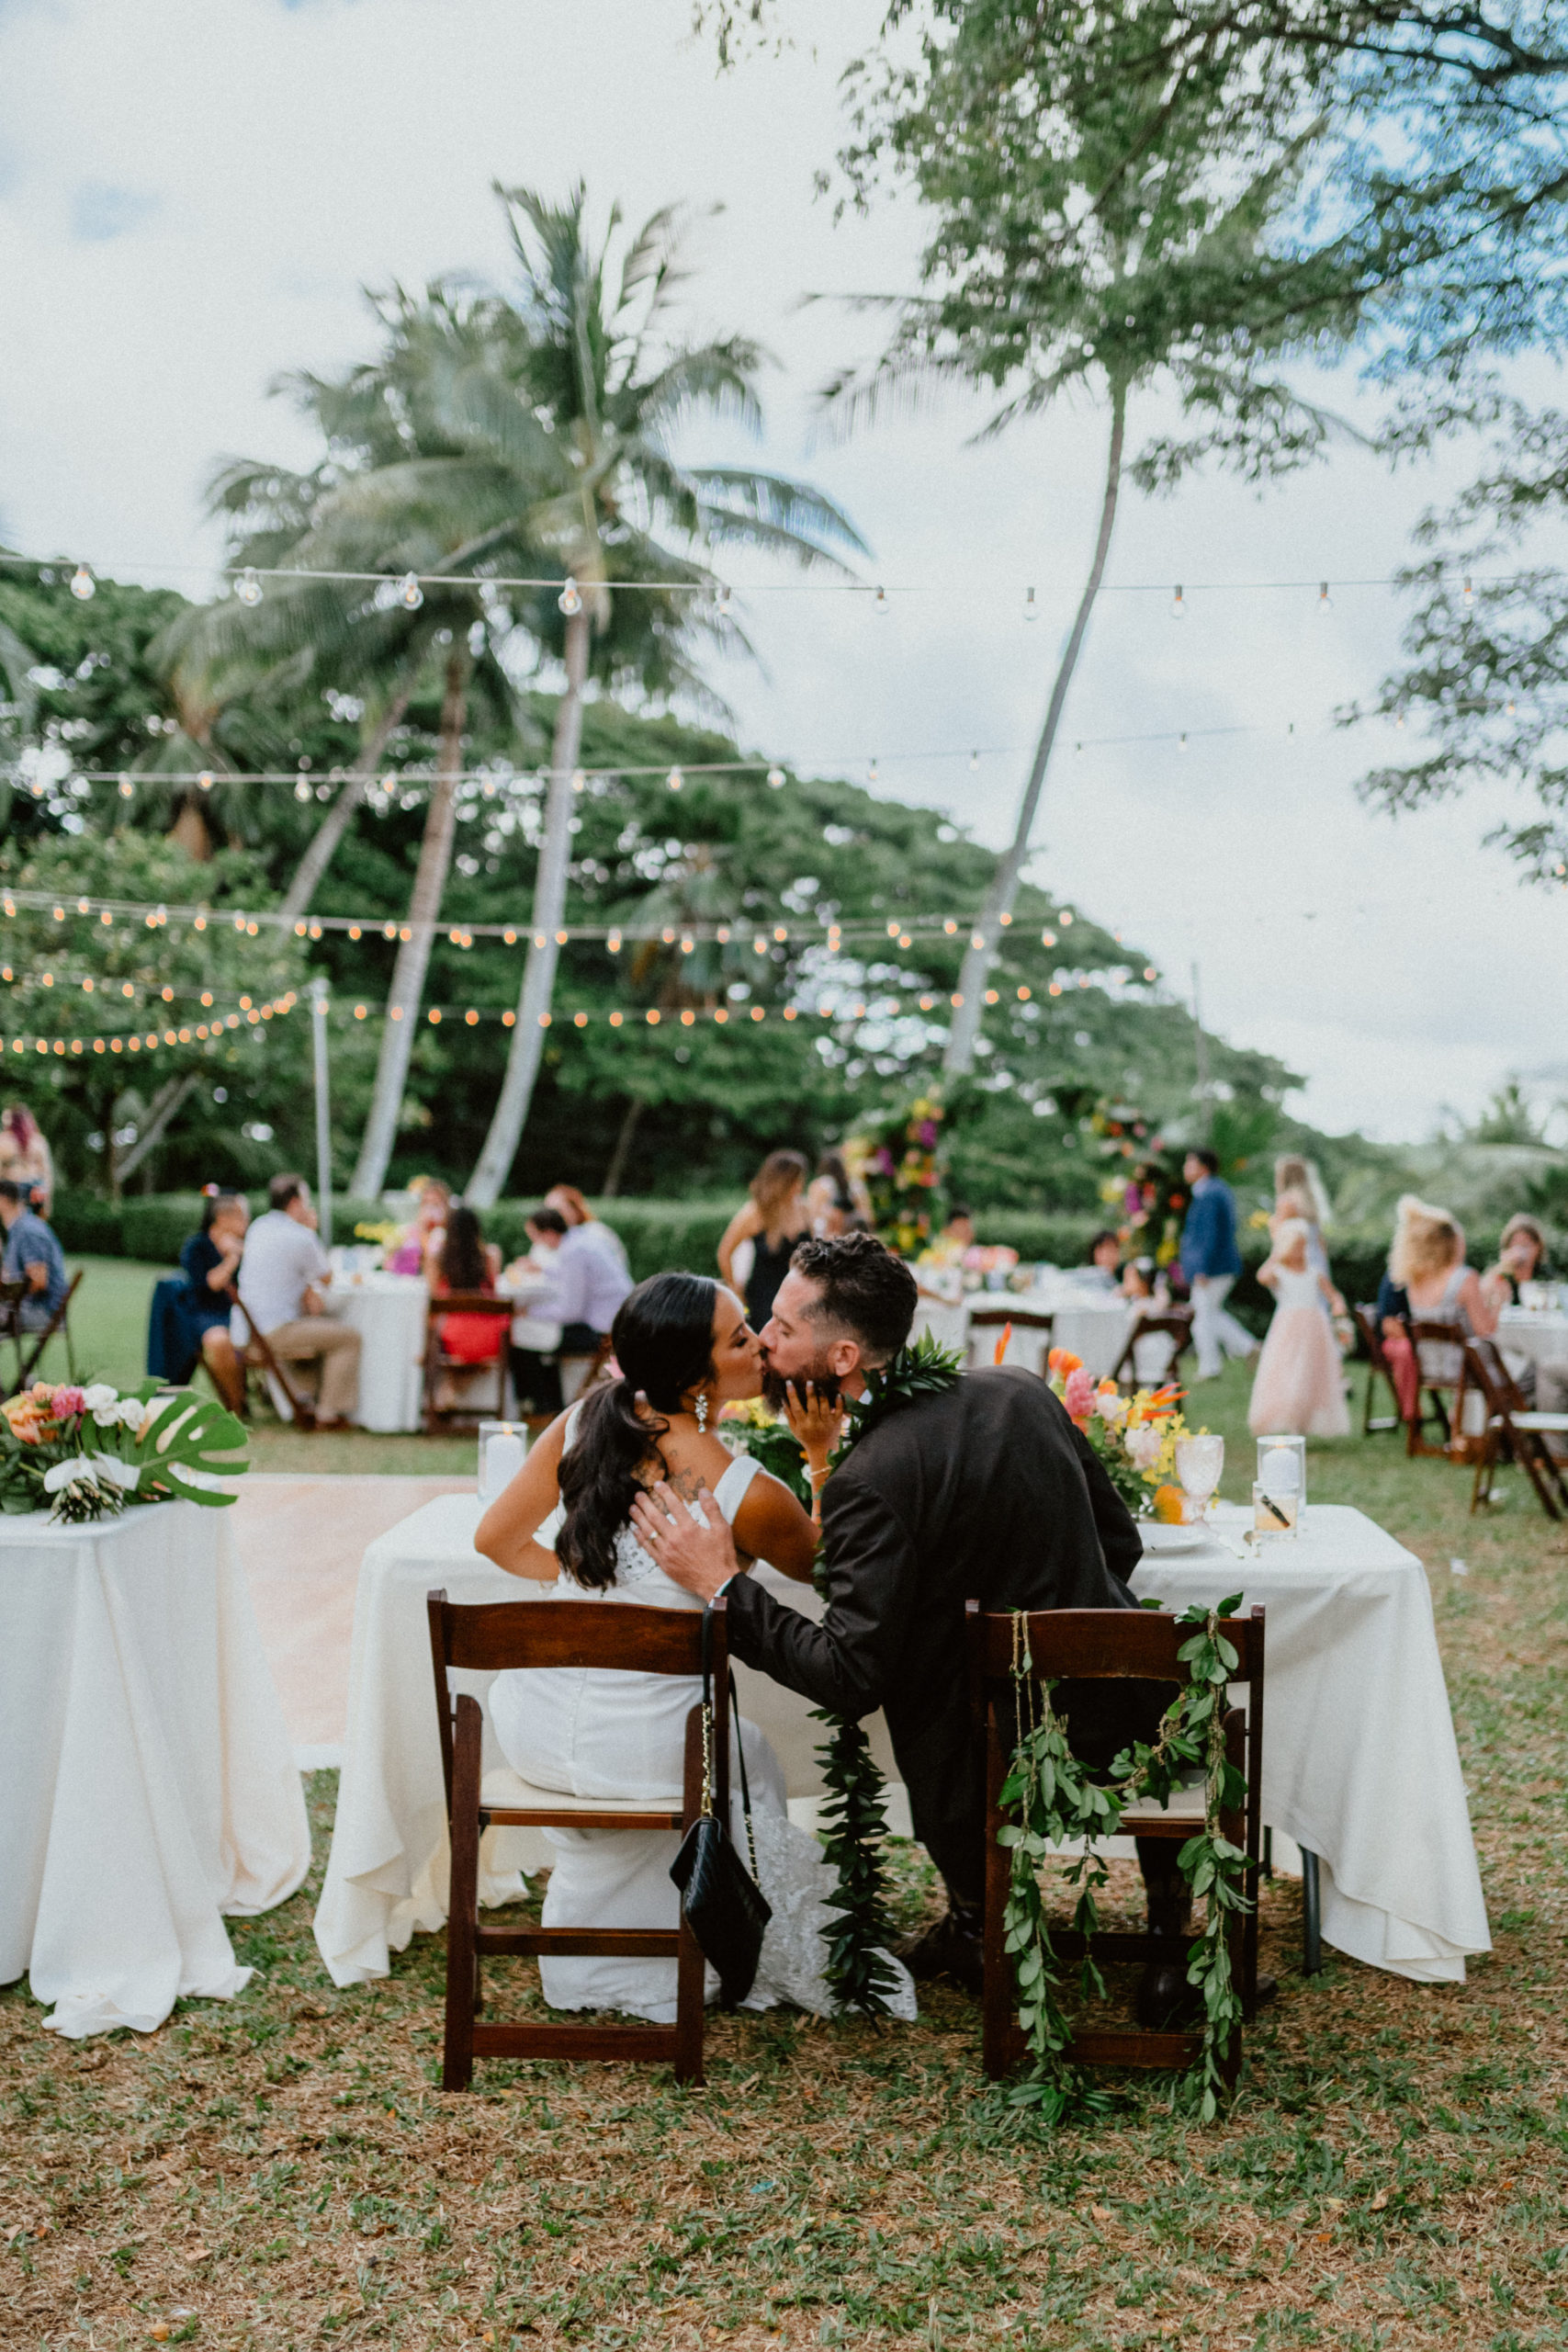 Moli'i fishpond Hawaii wedding reception